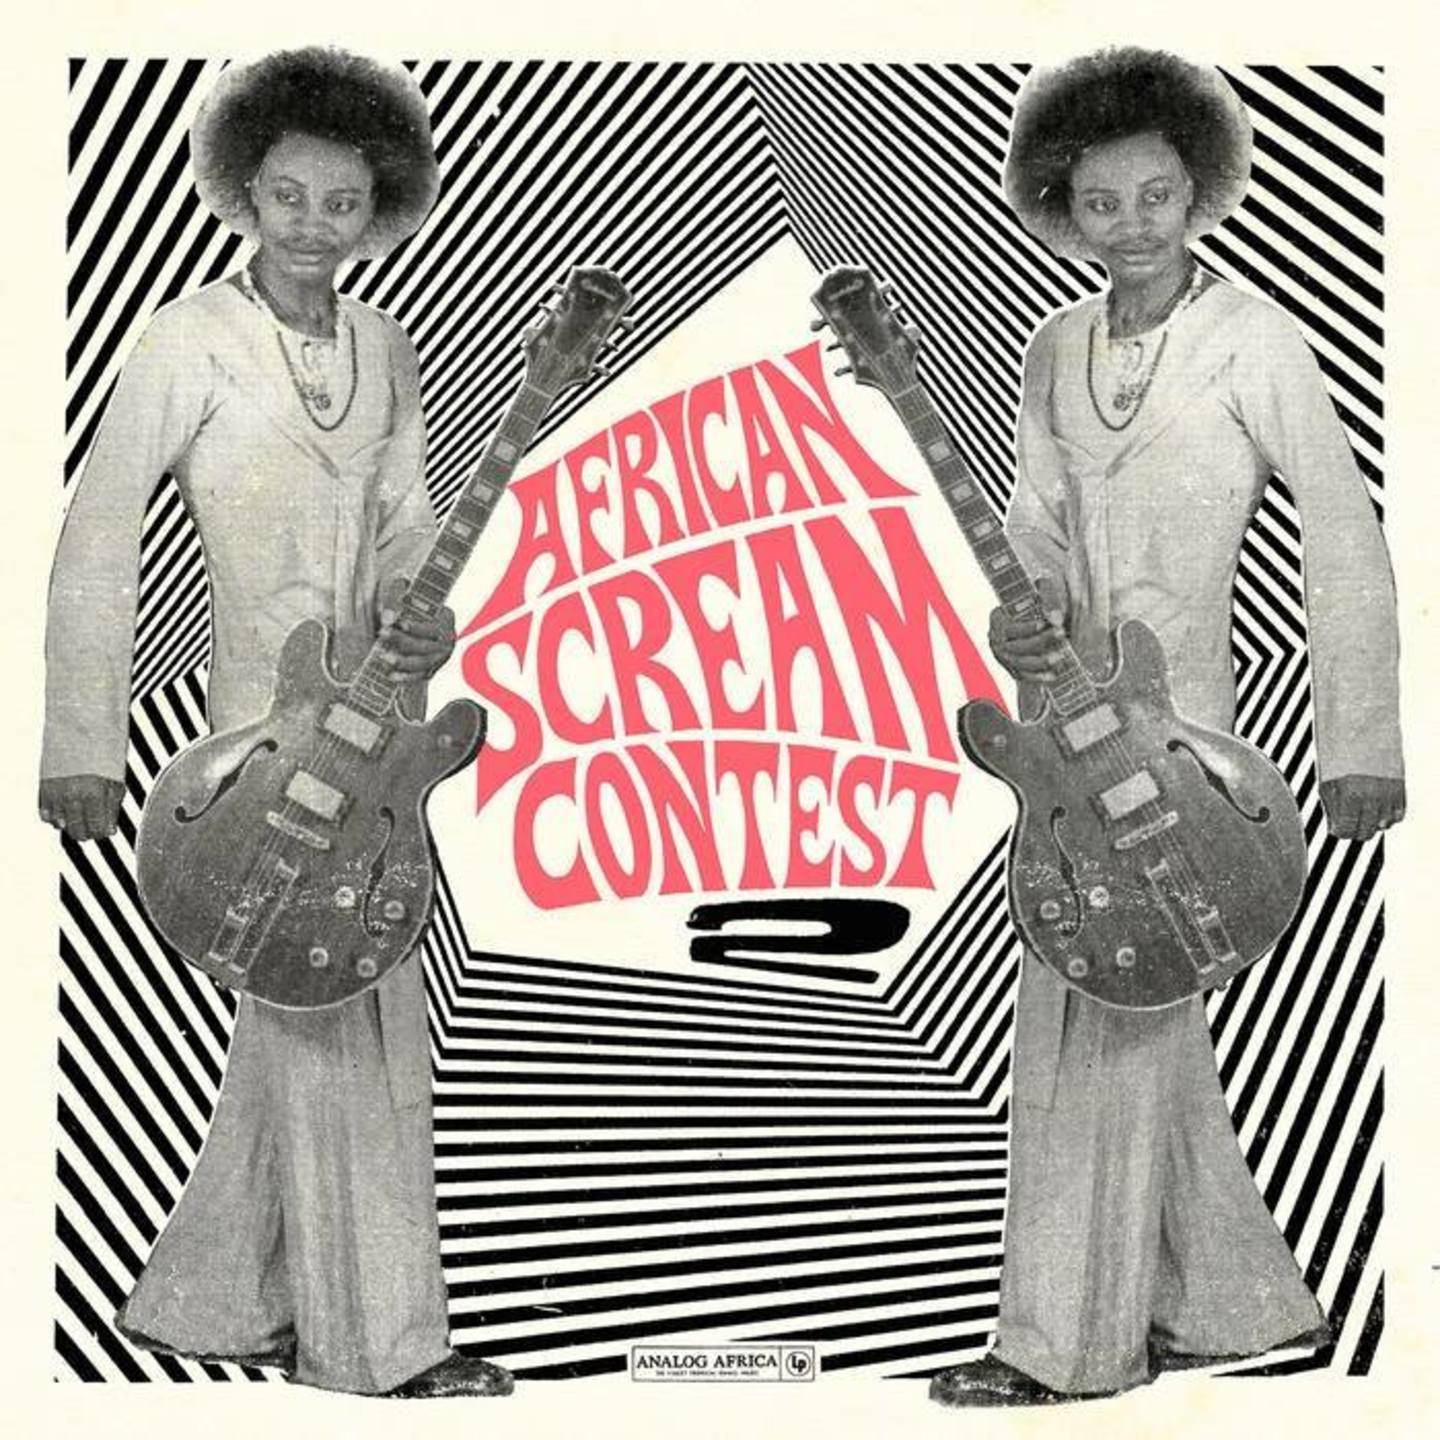 VA - African Scream Contest Vol.2 Benin 1963-1980 2xLP